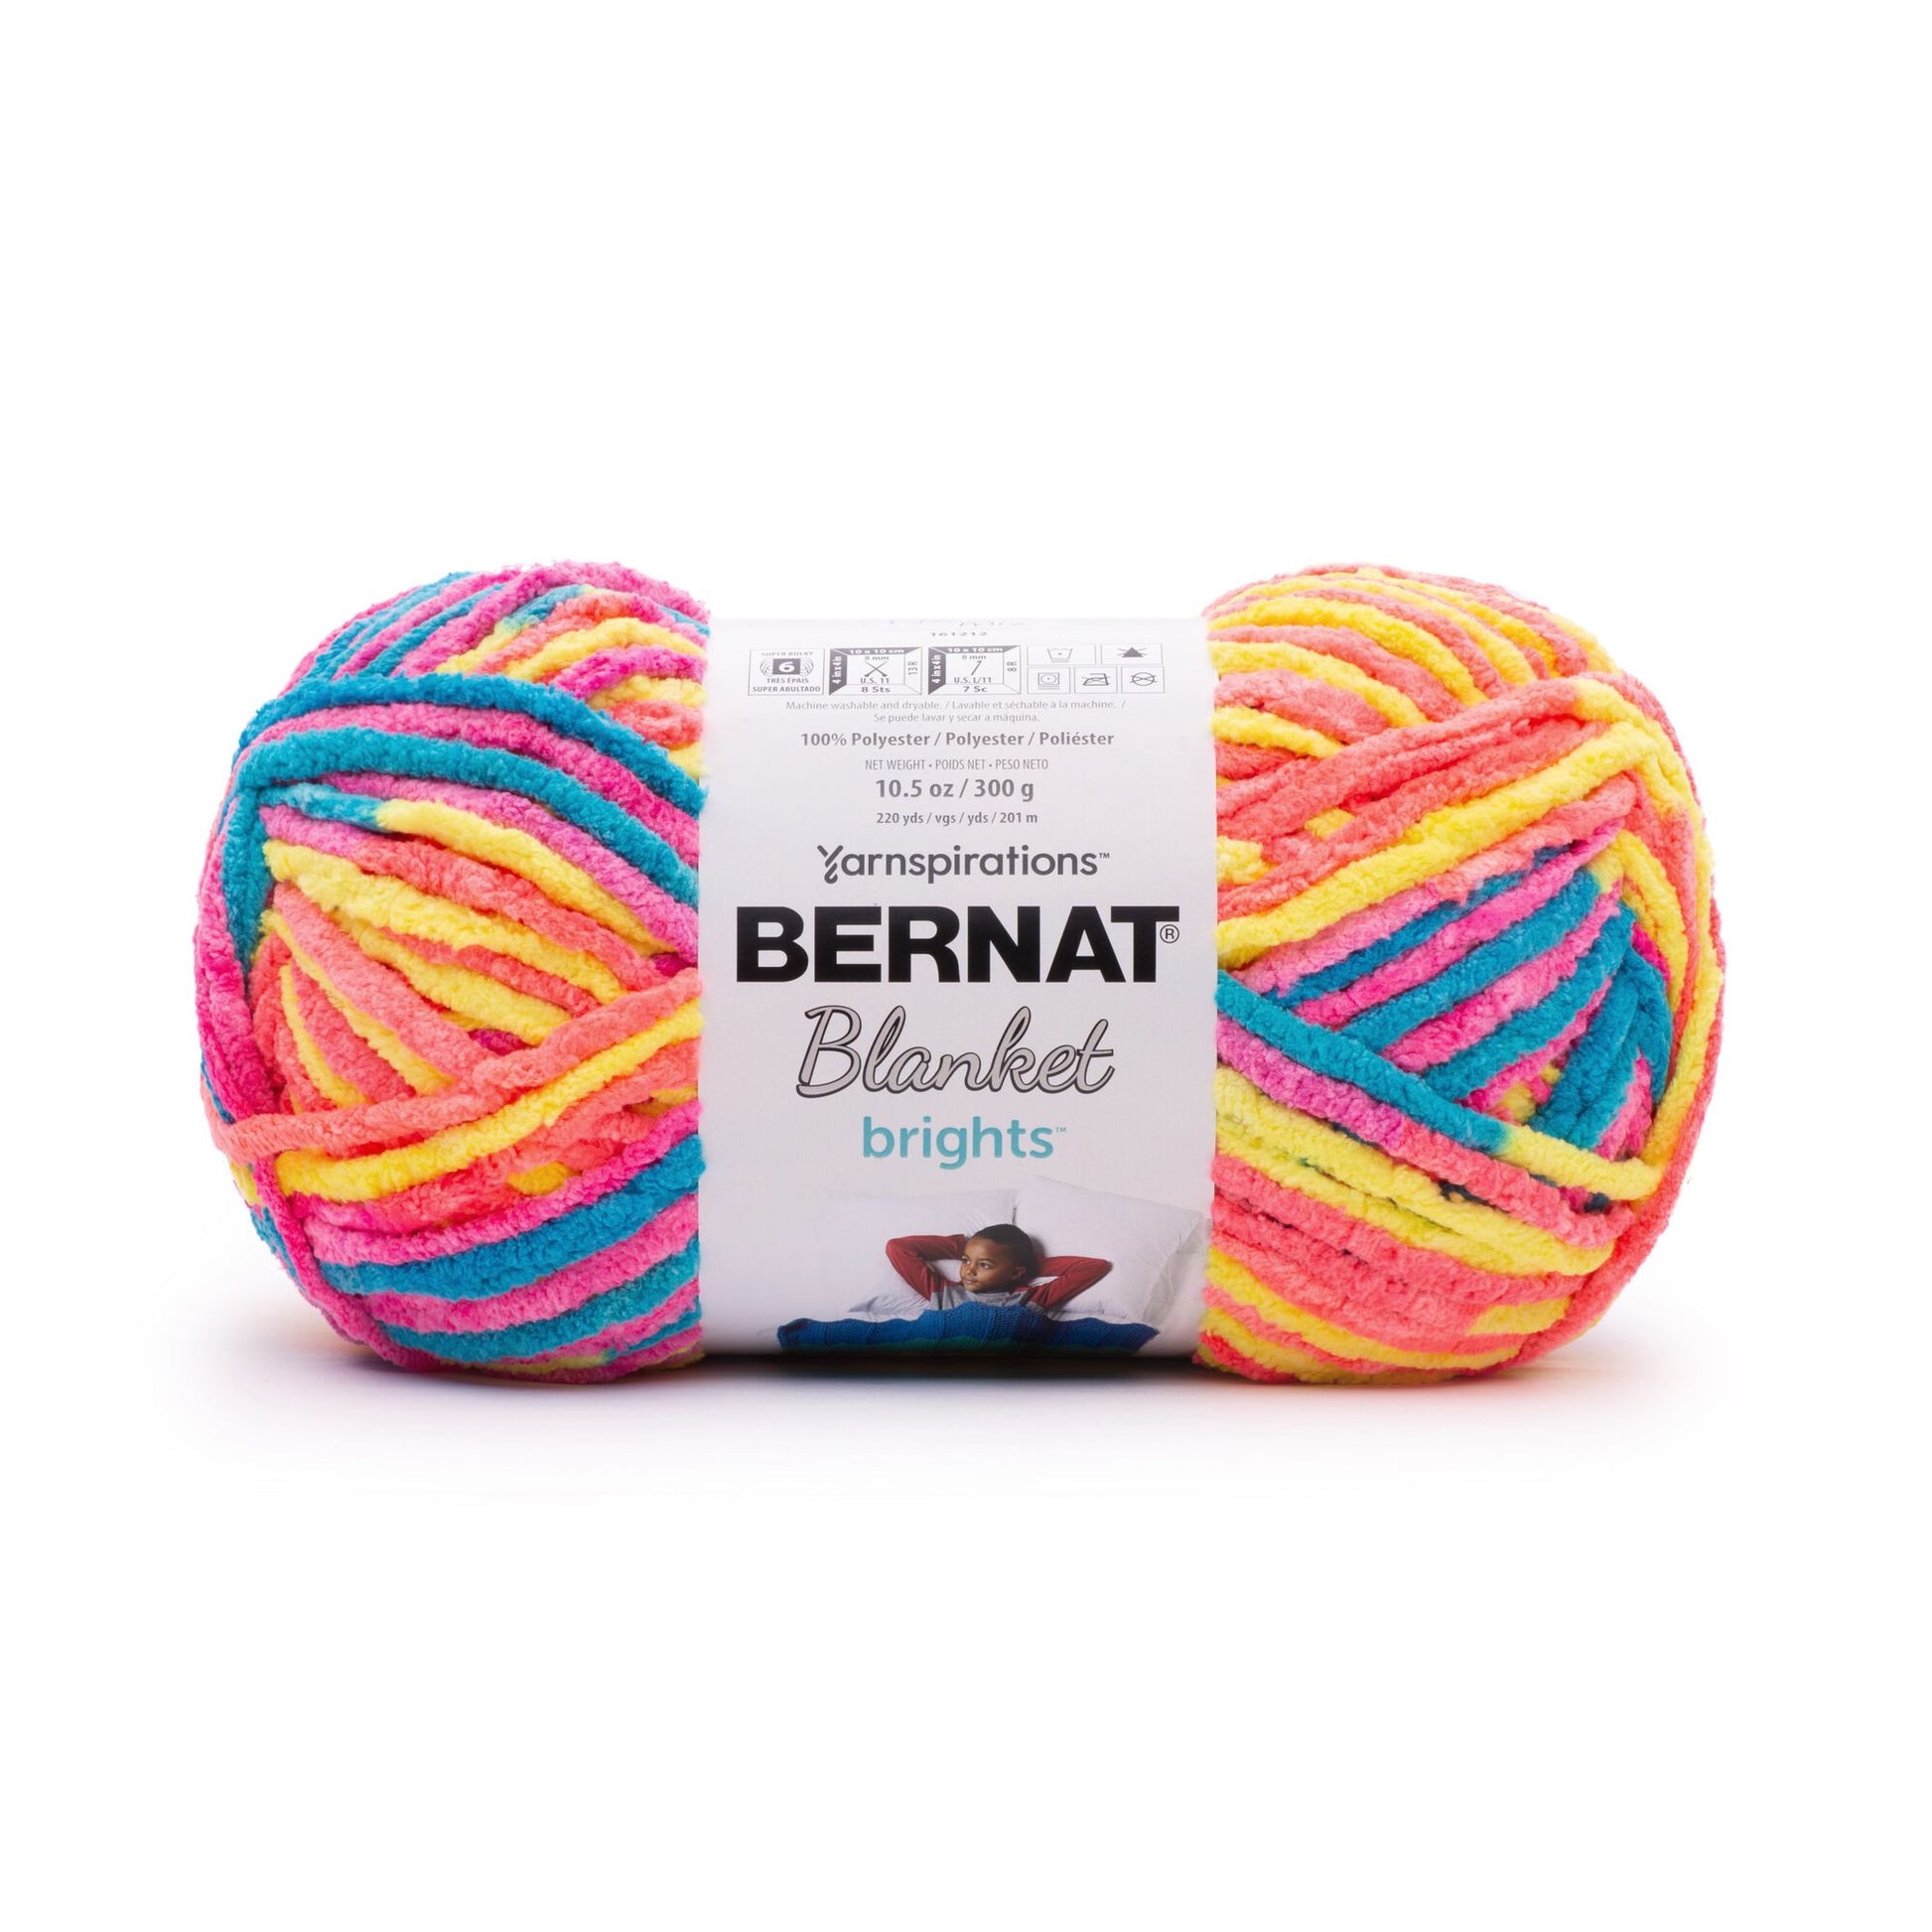 BERNAT BLANKET Yarn, Country Blue, 10.5oz/300g, 220 yards/201m, Super – Yarn  2 Blanket